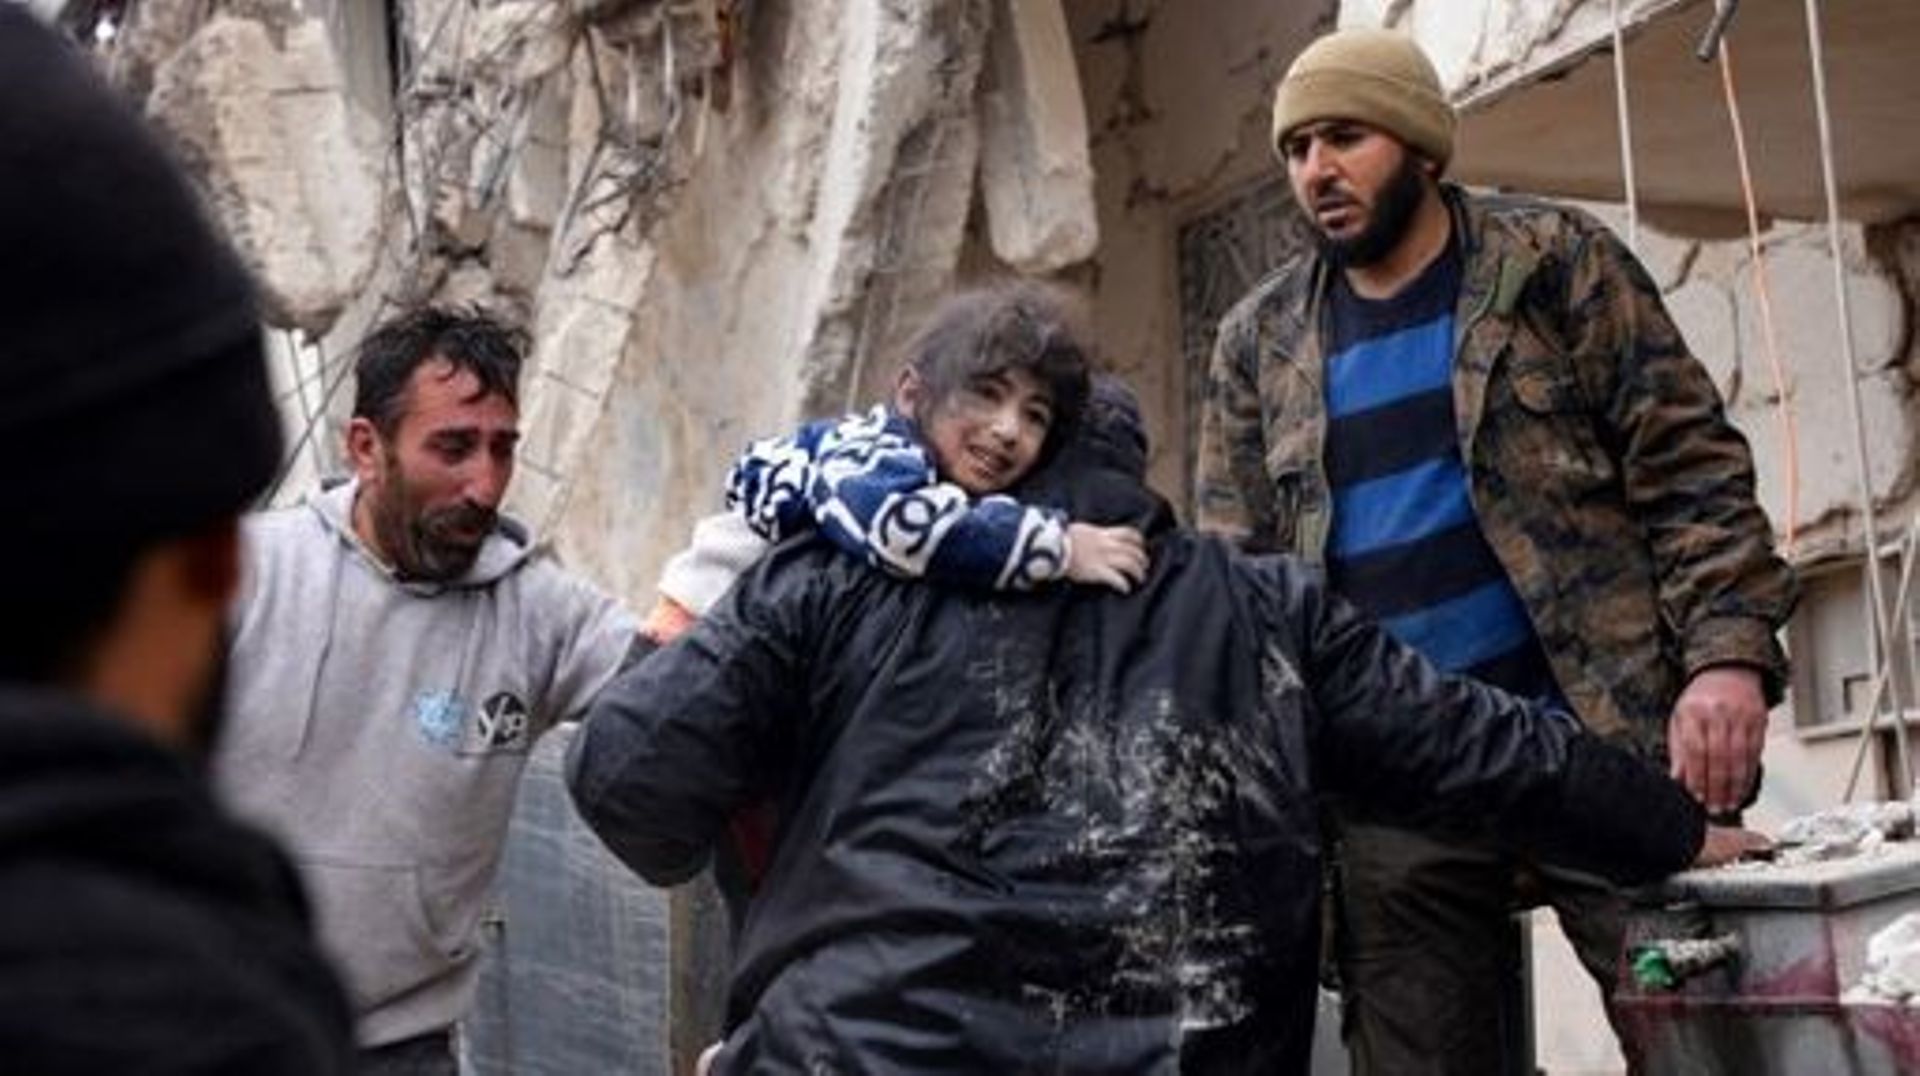 Des habitants récupèrent un petit enfant dans les décombres d'un bâtiment effondré à la suite d'un tremblement de terre dans la ville de Jandaris, dans la campagne de la ville d'Afrin, au nord-ouest de la Syrie, dans la partie de la province d'Alep tenue 